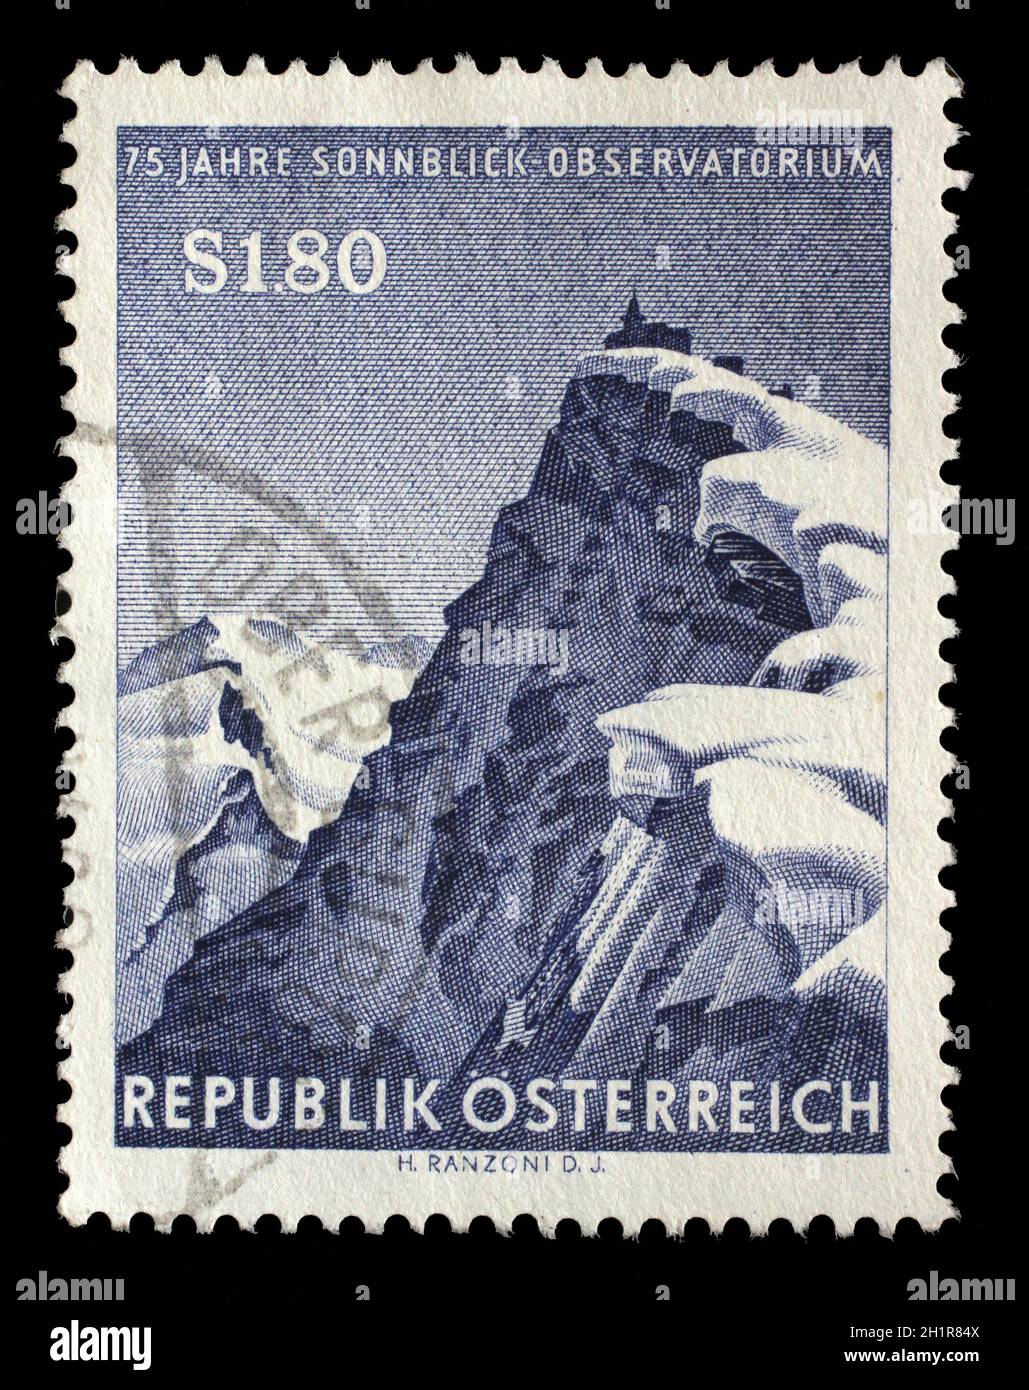 Timbre imprimé par l'Autriche montre une vue sur les sommets de Hoher Sonnblick avec son Observatoire situé dans les Alpes centrales autrichiennes, vers 1962. Banque D'Images